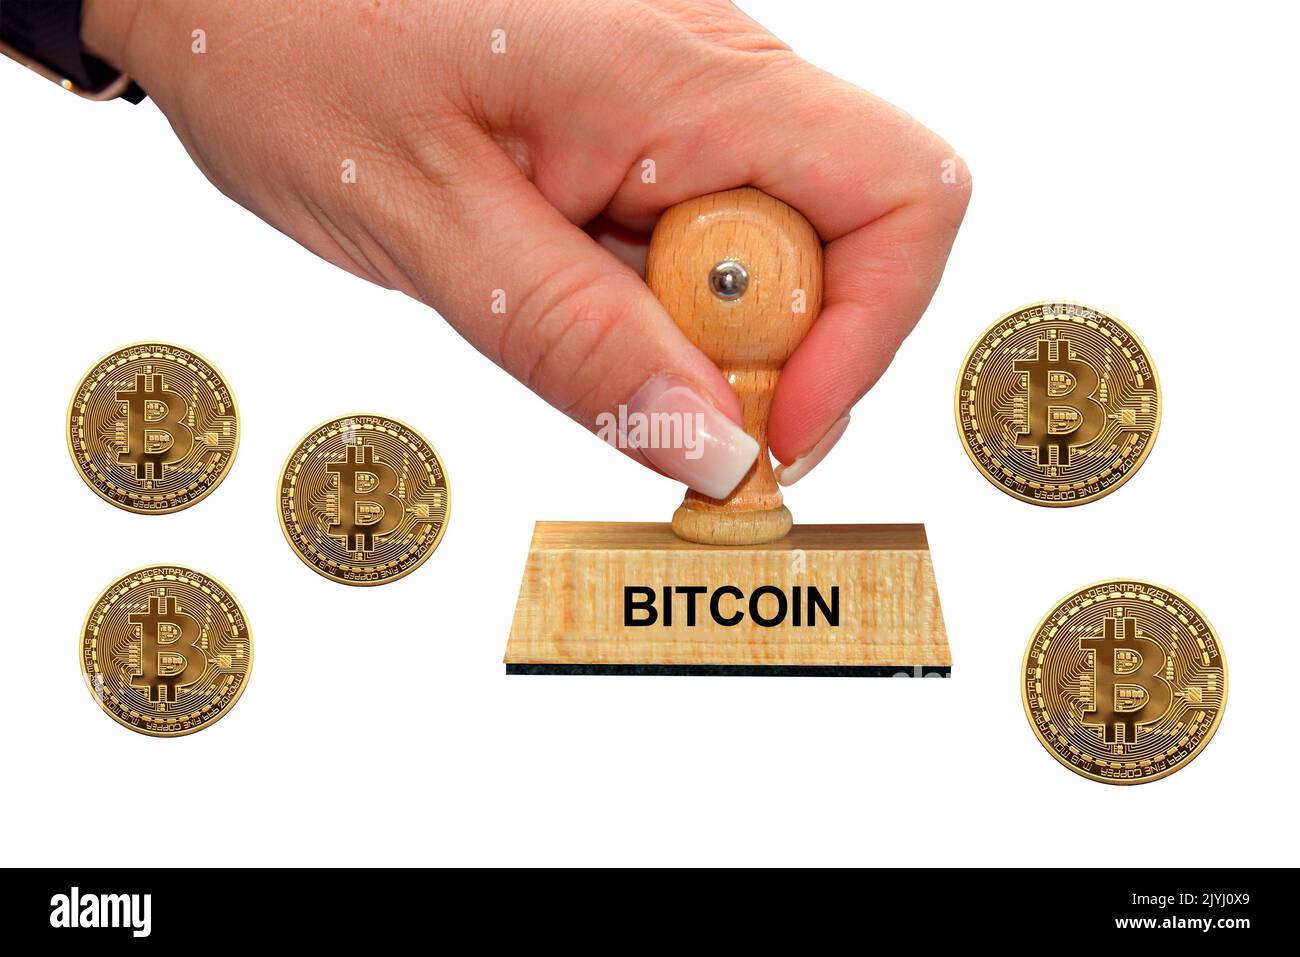 Main de femme avec cachet Bitcoin, découpé, Allemagne Banque D'Images